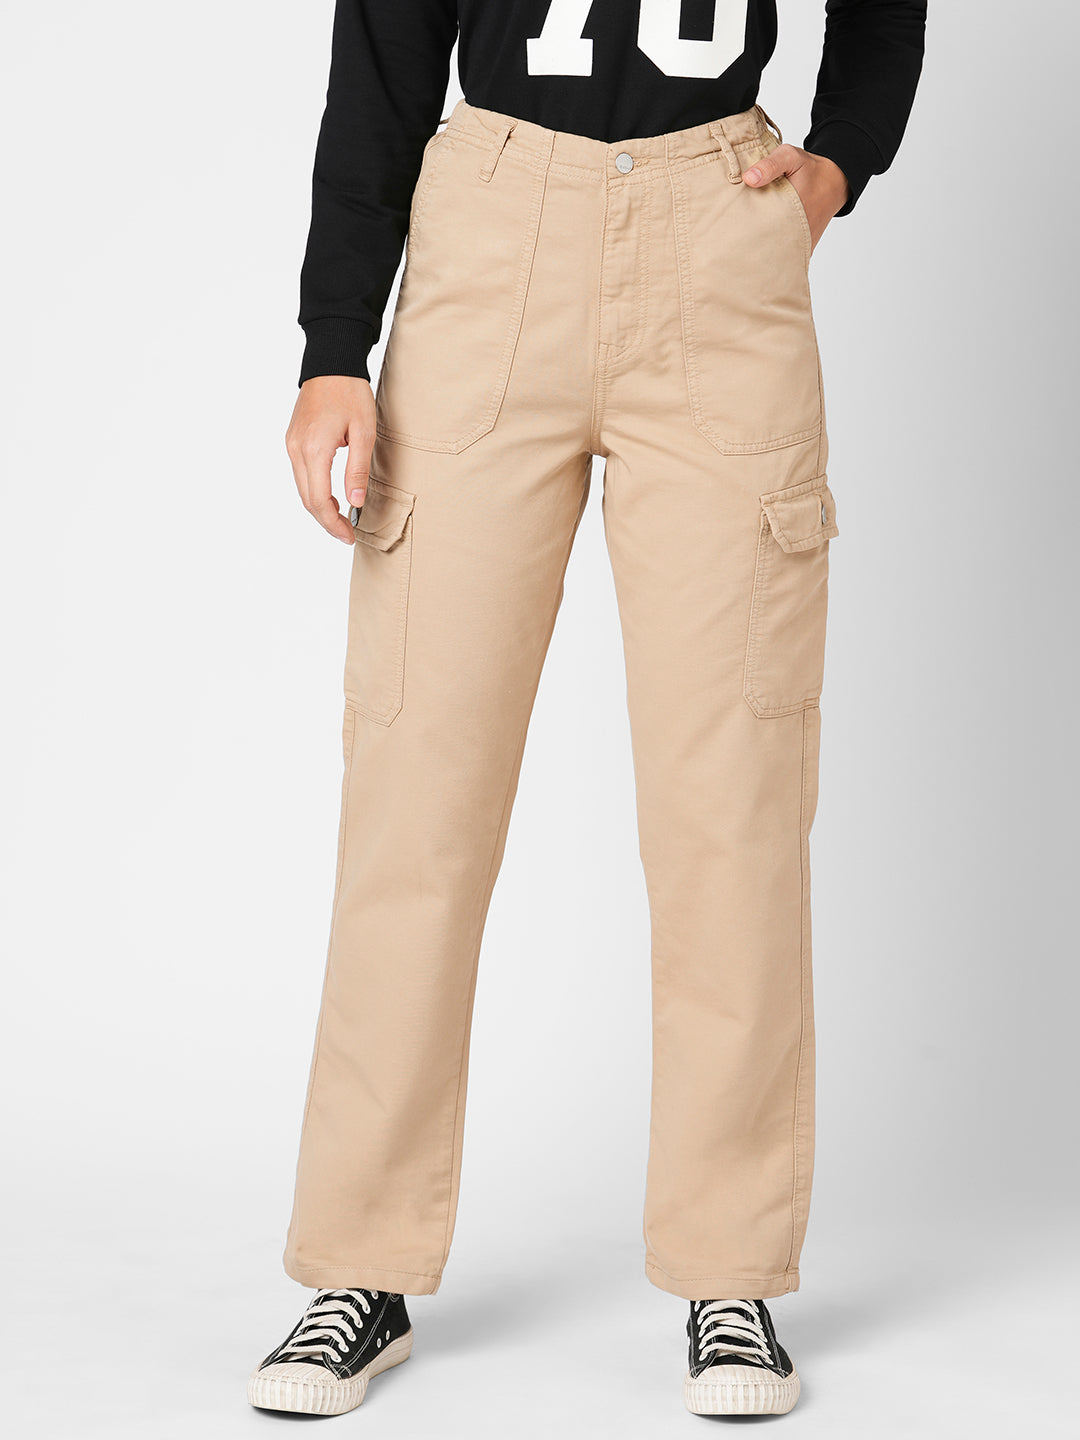 Shop Trouses for Women Online | Trouser Pants & Culottes | Kraus Jeans